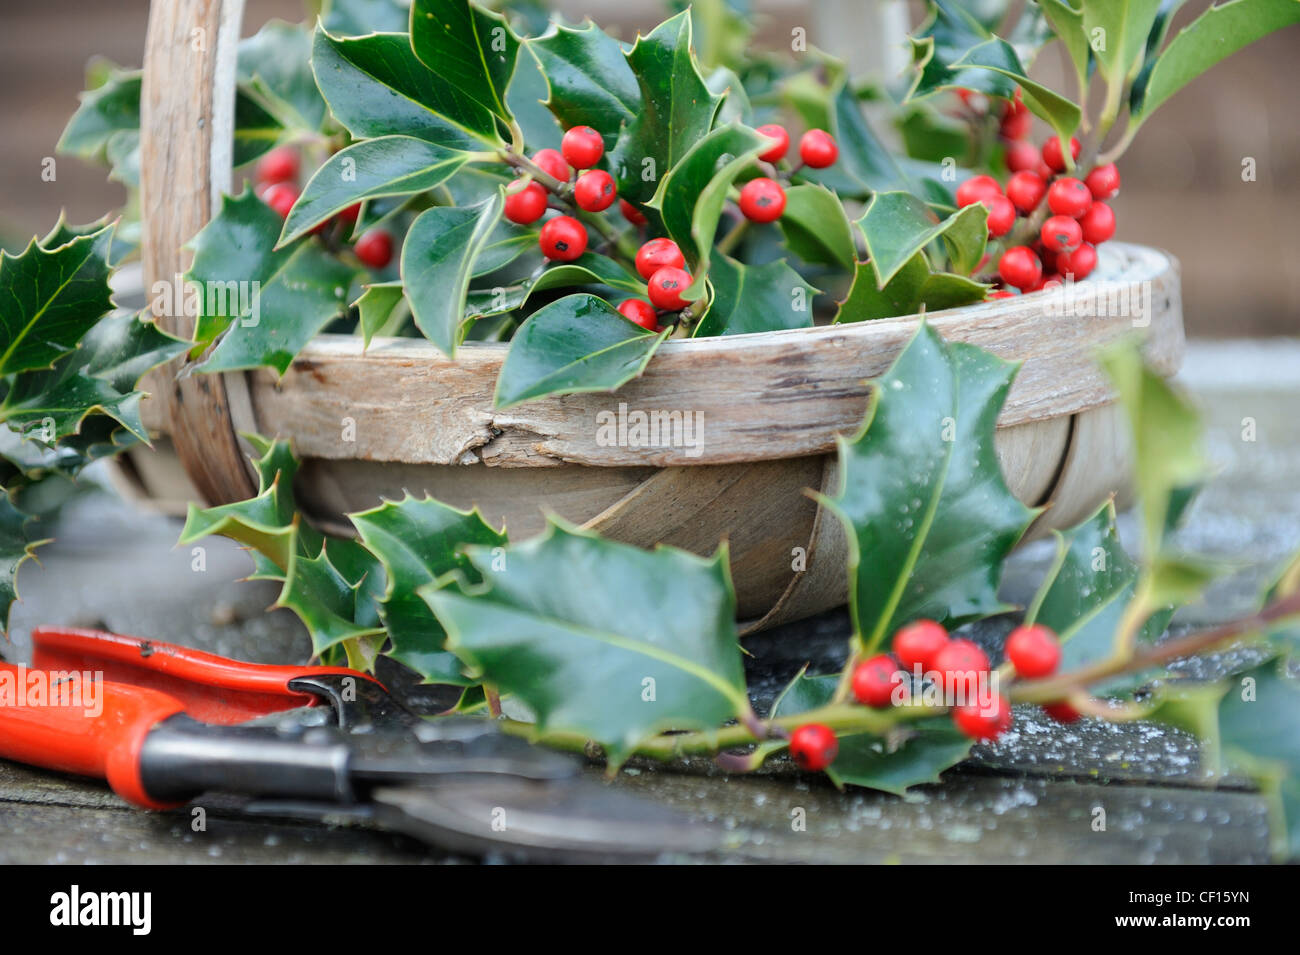 Sammeln von Holly für Weihnachtsdekoration, Trug der Stechpalme mit roten Beeren und Gartenschere, England, Dezember Stockfoto